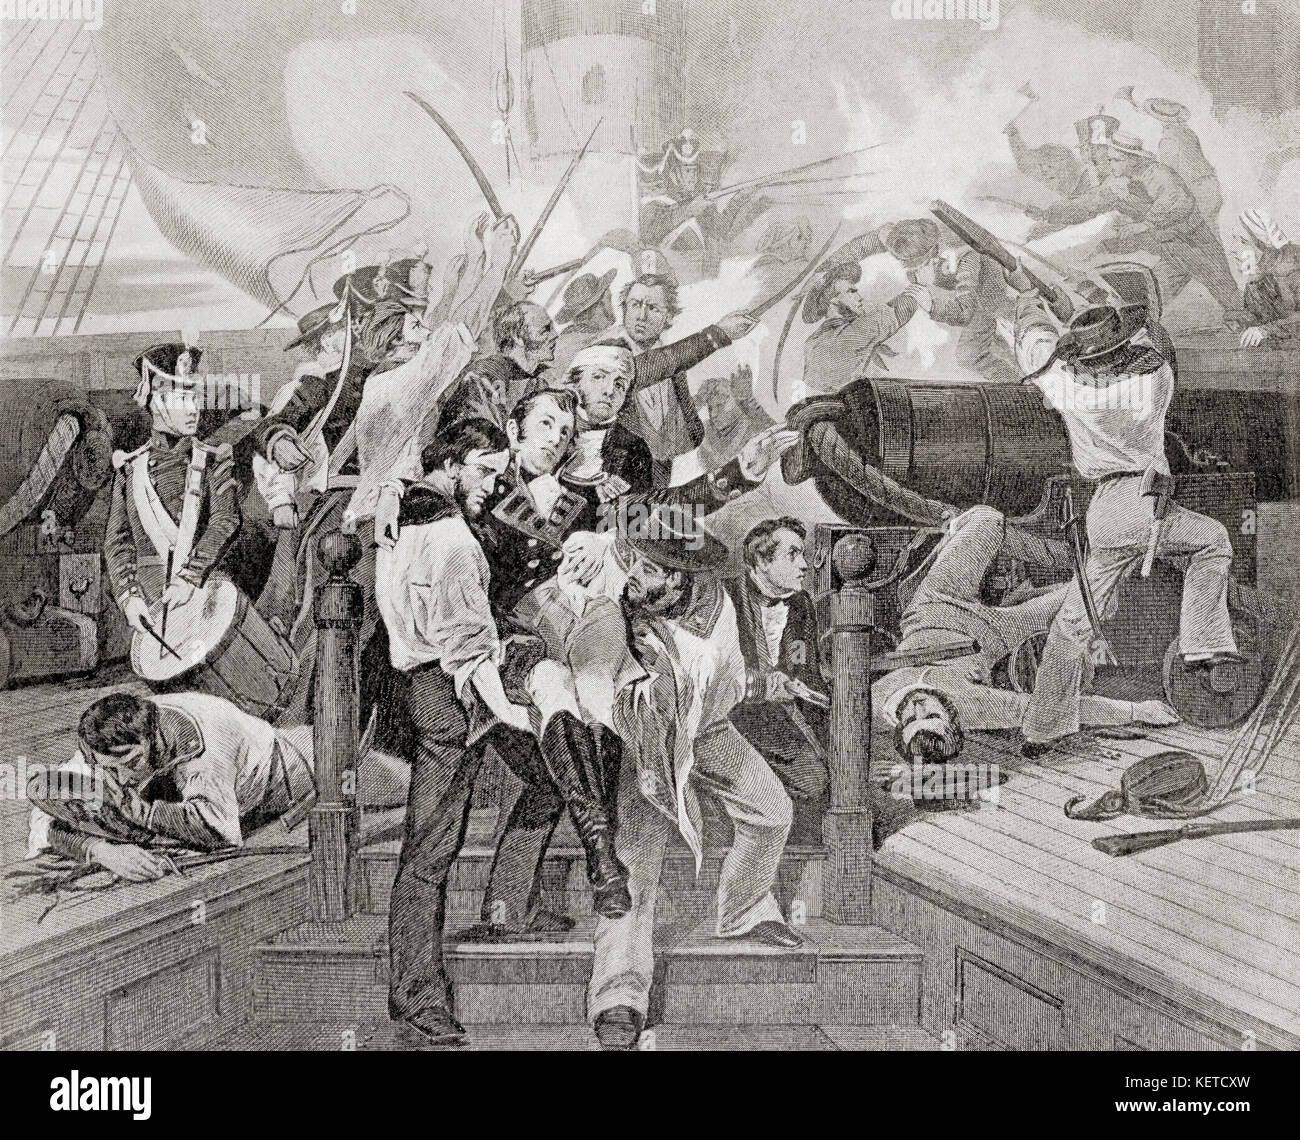 La mort de James Lawrence à bord de l'USS Chesapeake après une action d'un seul navire contre le HMS Shannon pendant la guerre de 1812. James Lawrence, 1781 – 1813. Officier de marine américain. De l'Histoire des Nations de Hutchinson, publié en 1915. Banque D'Images